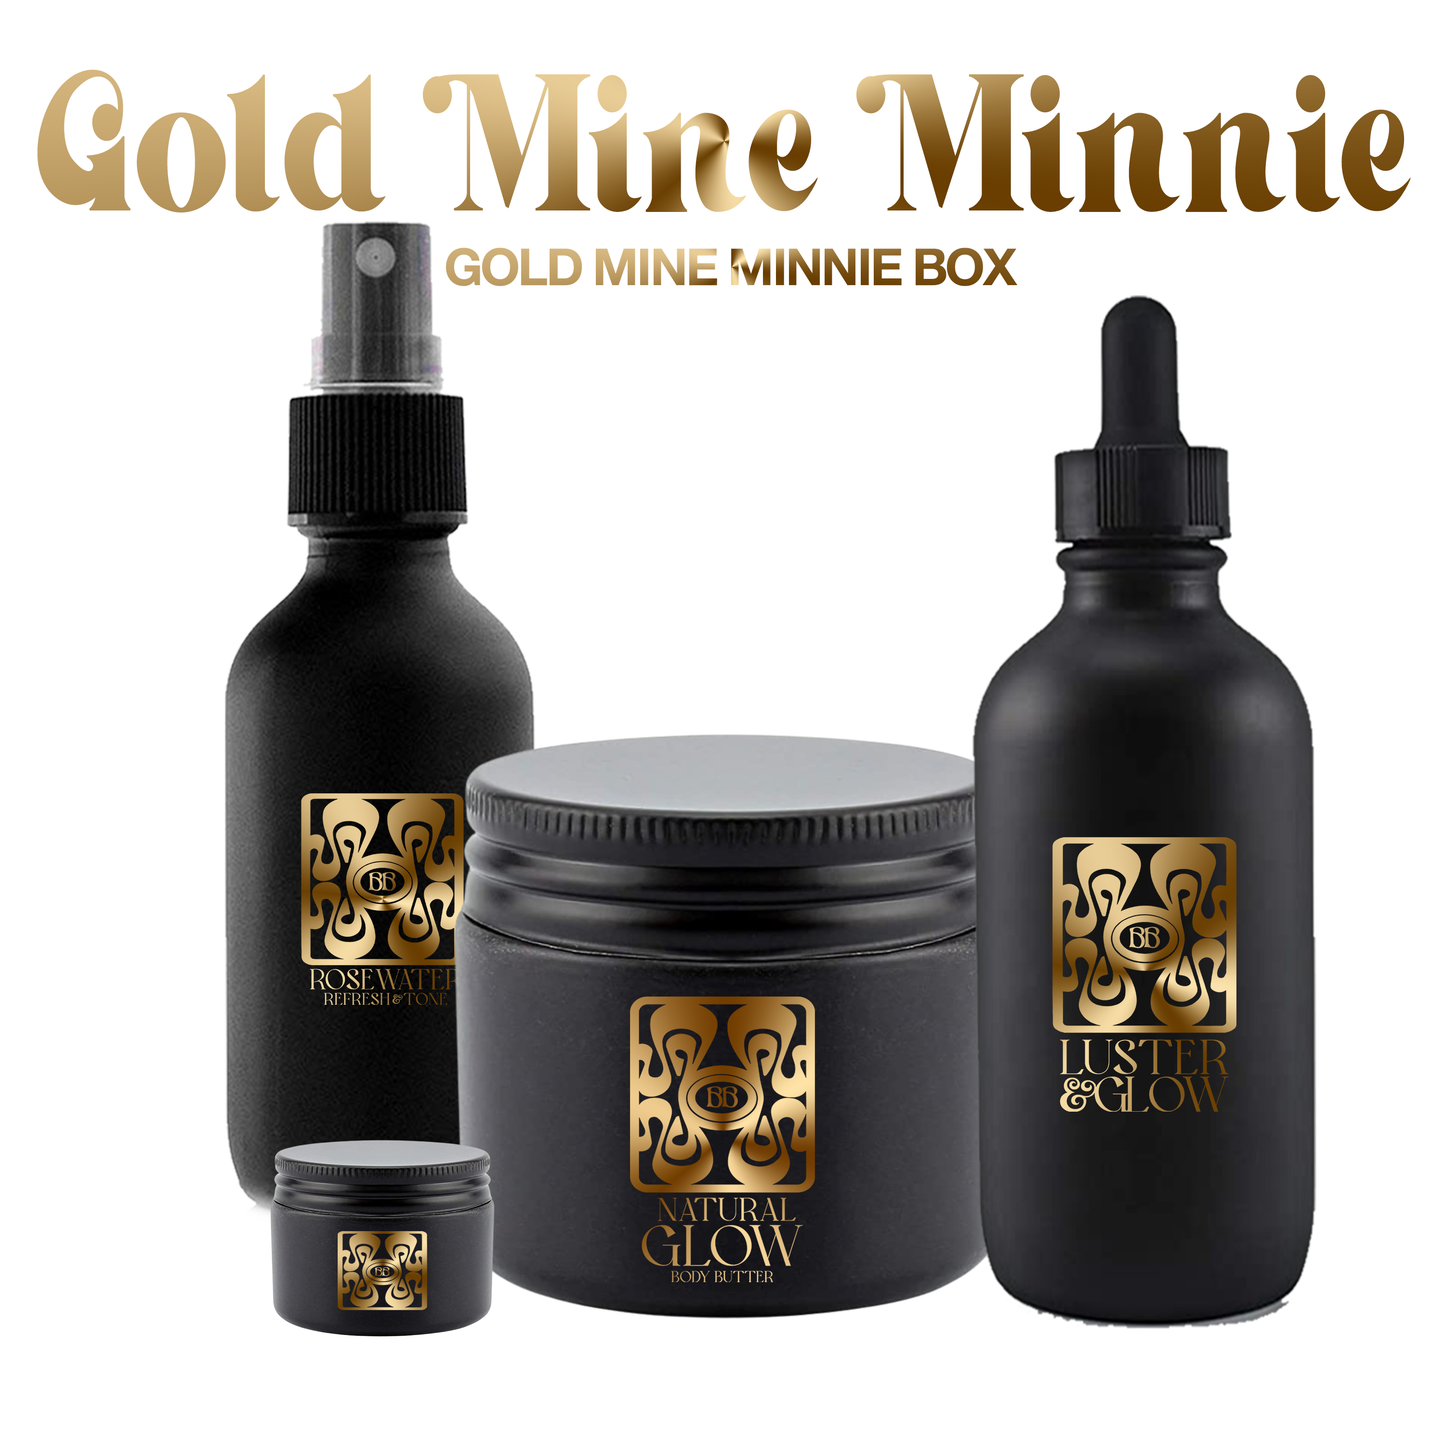 Gold Mine Minnie Box